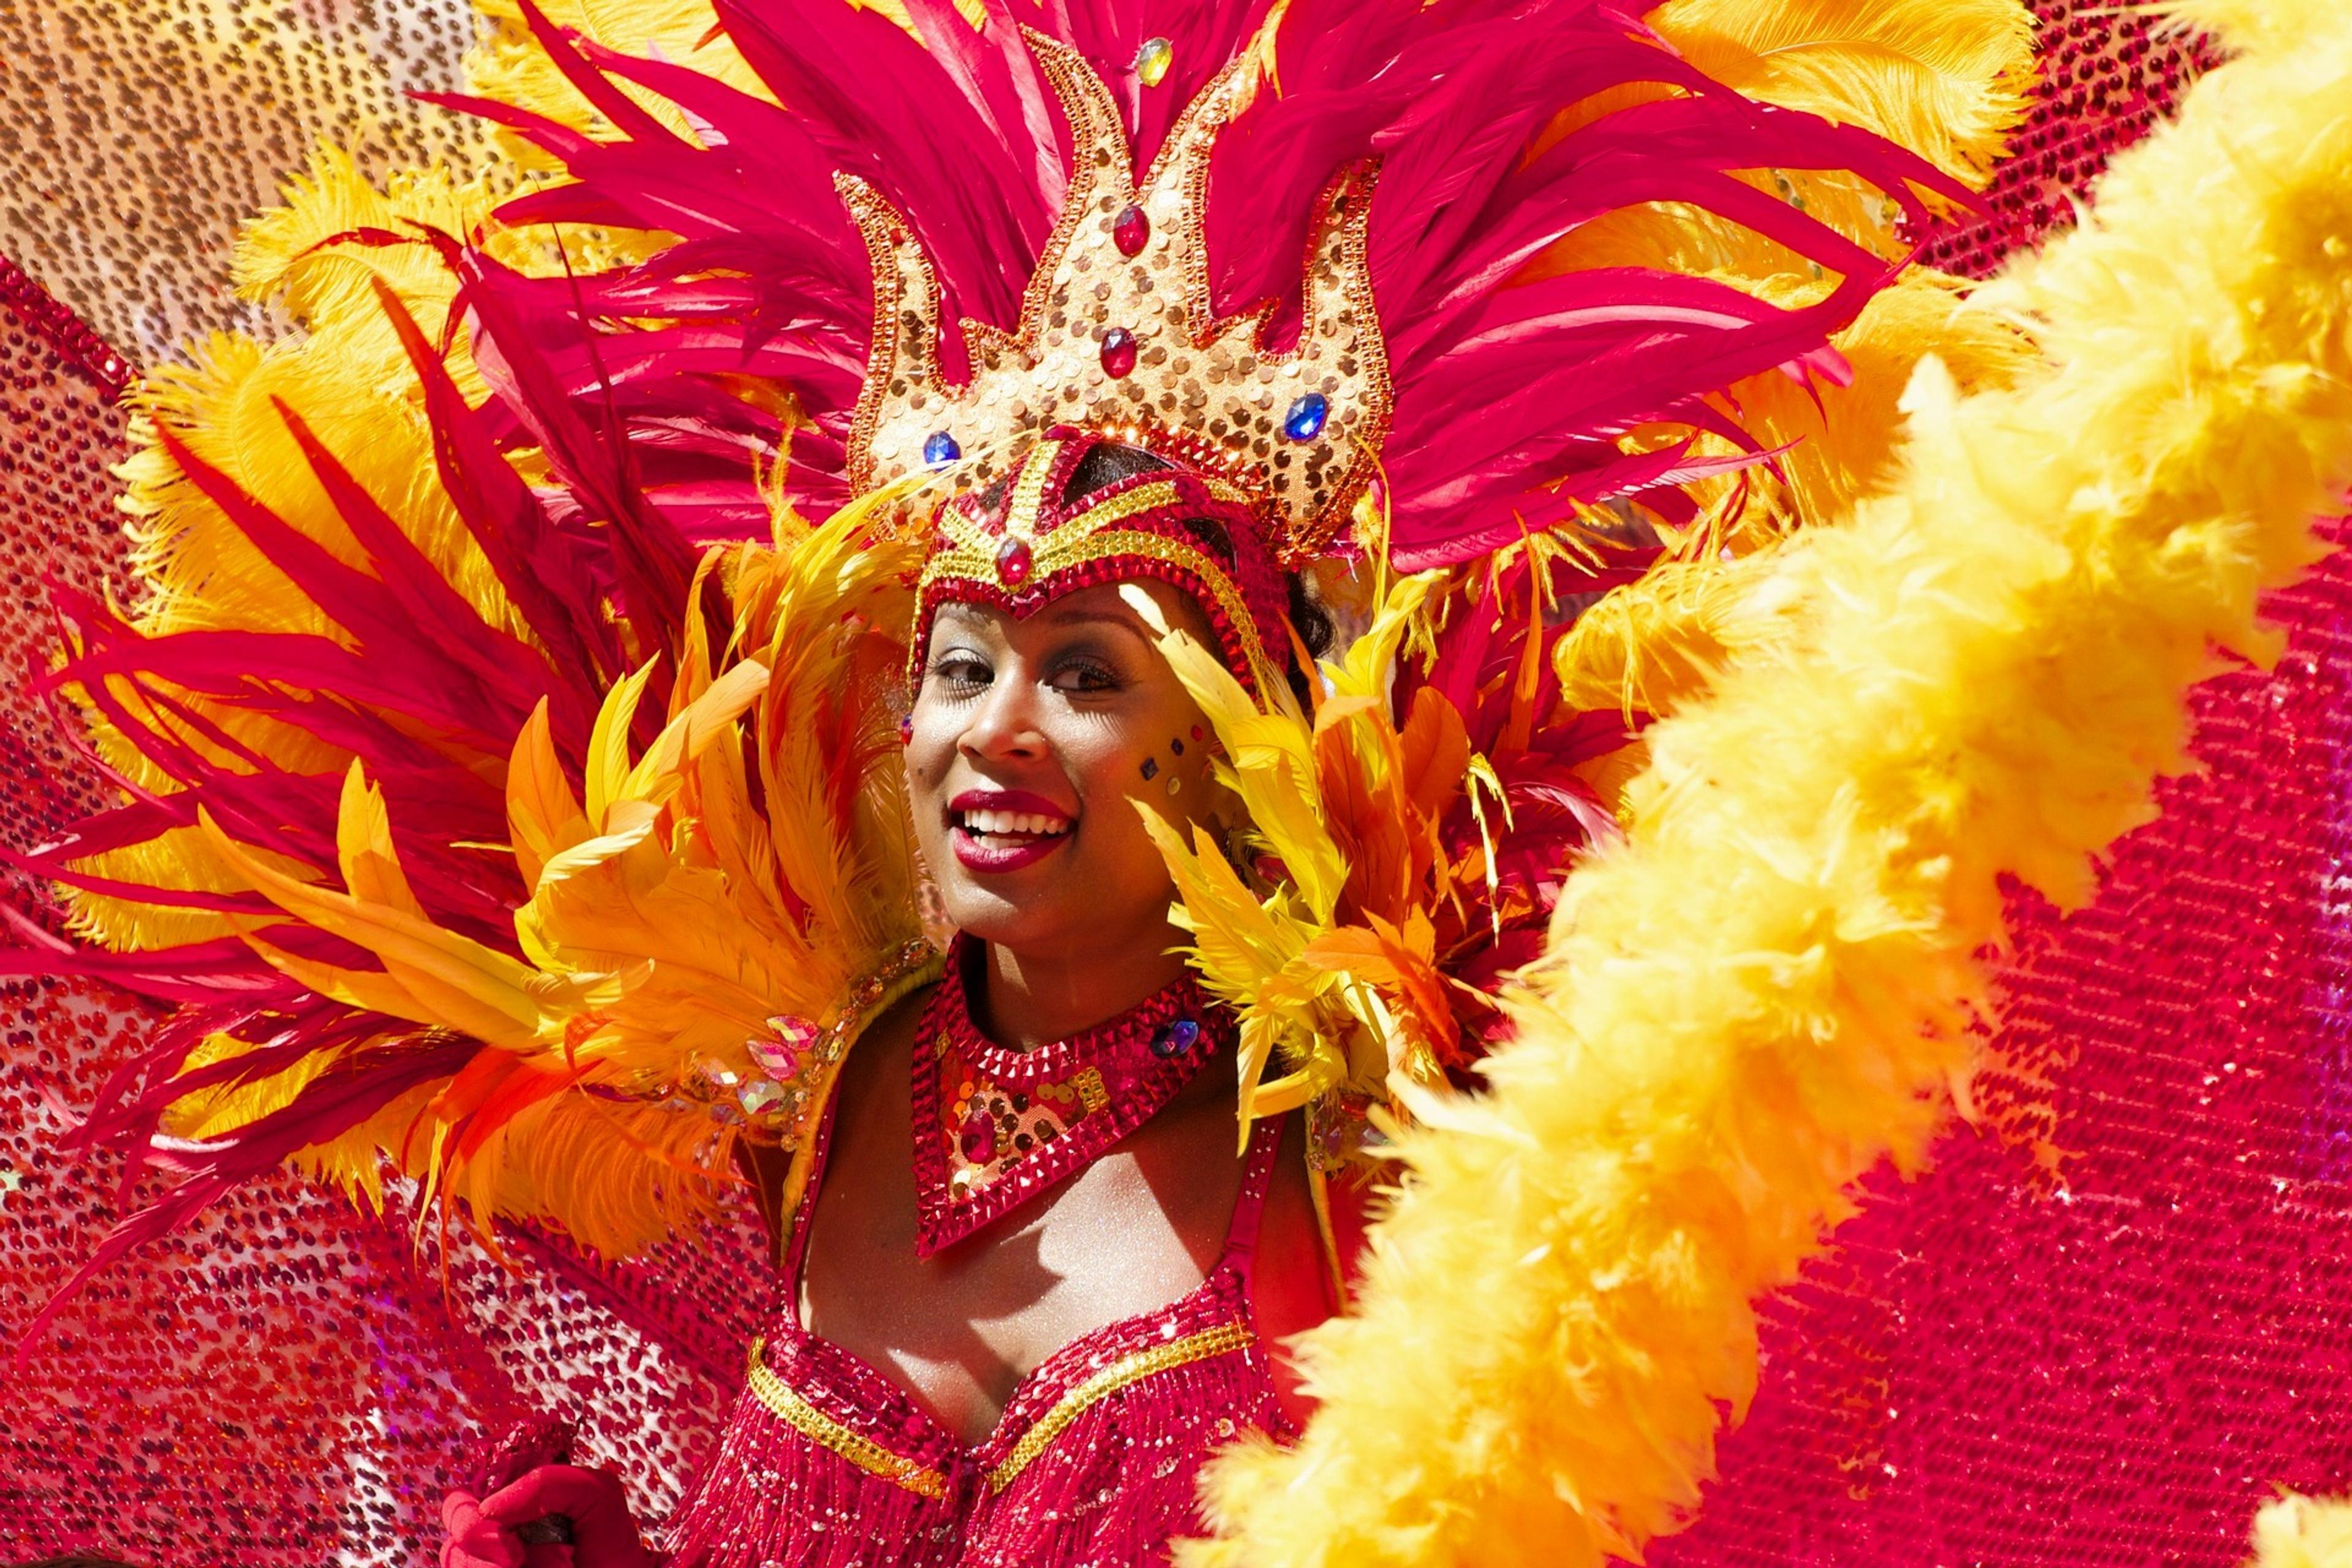 Carnival of Las Palmas de Gran Canaria